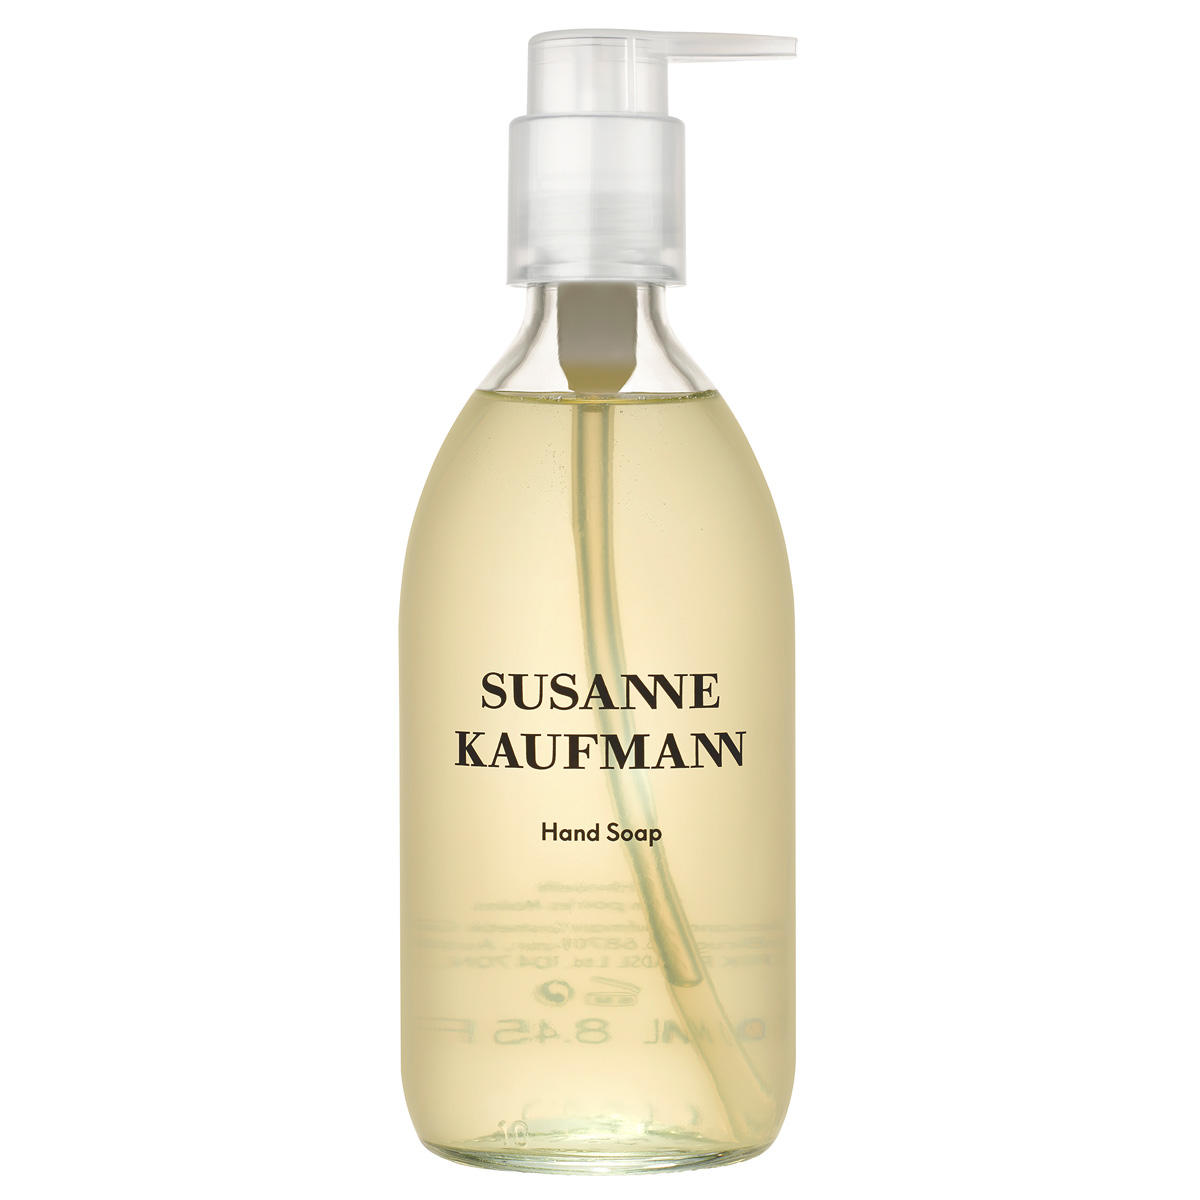 Susanne Kaufmann Savon pour les mains - Hand Soap 250 ml - 1